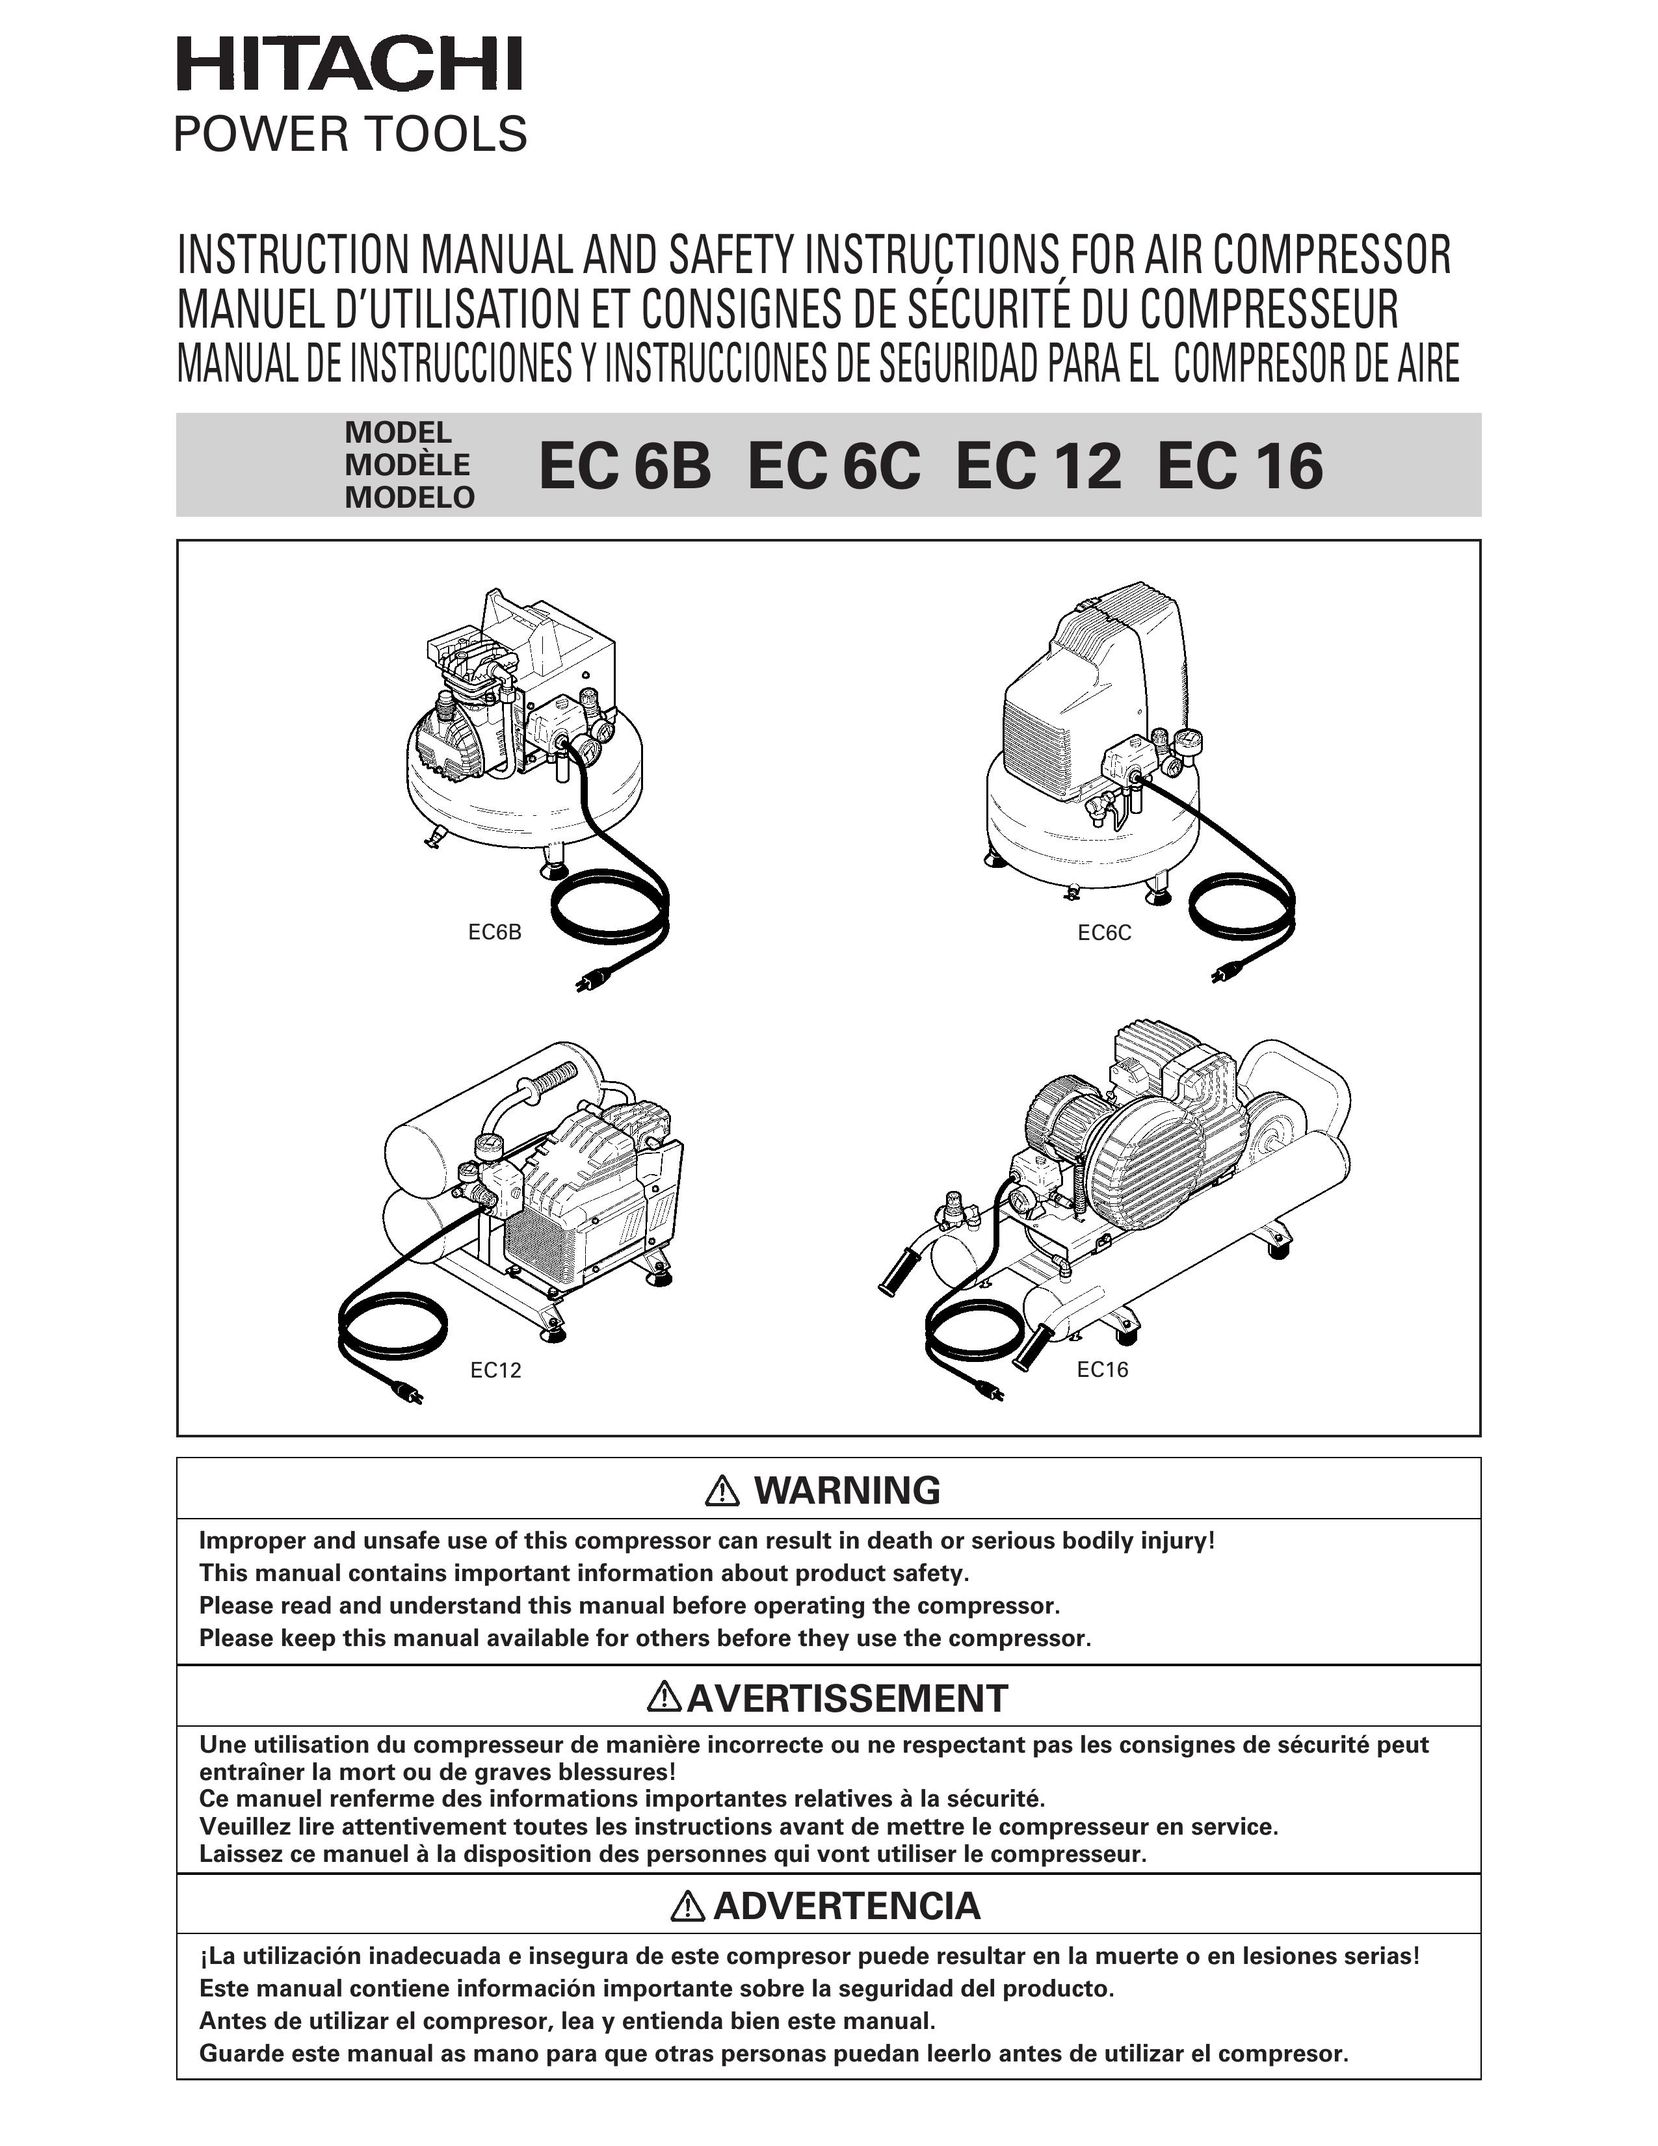 Hitachi EC 6C Air Compressor User Manual